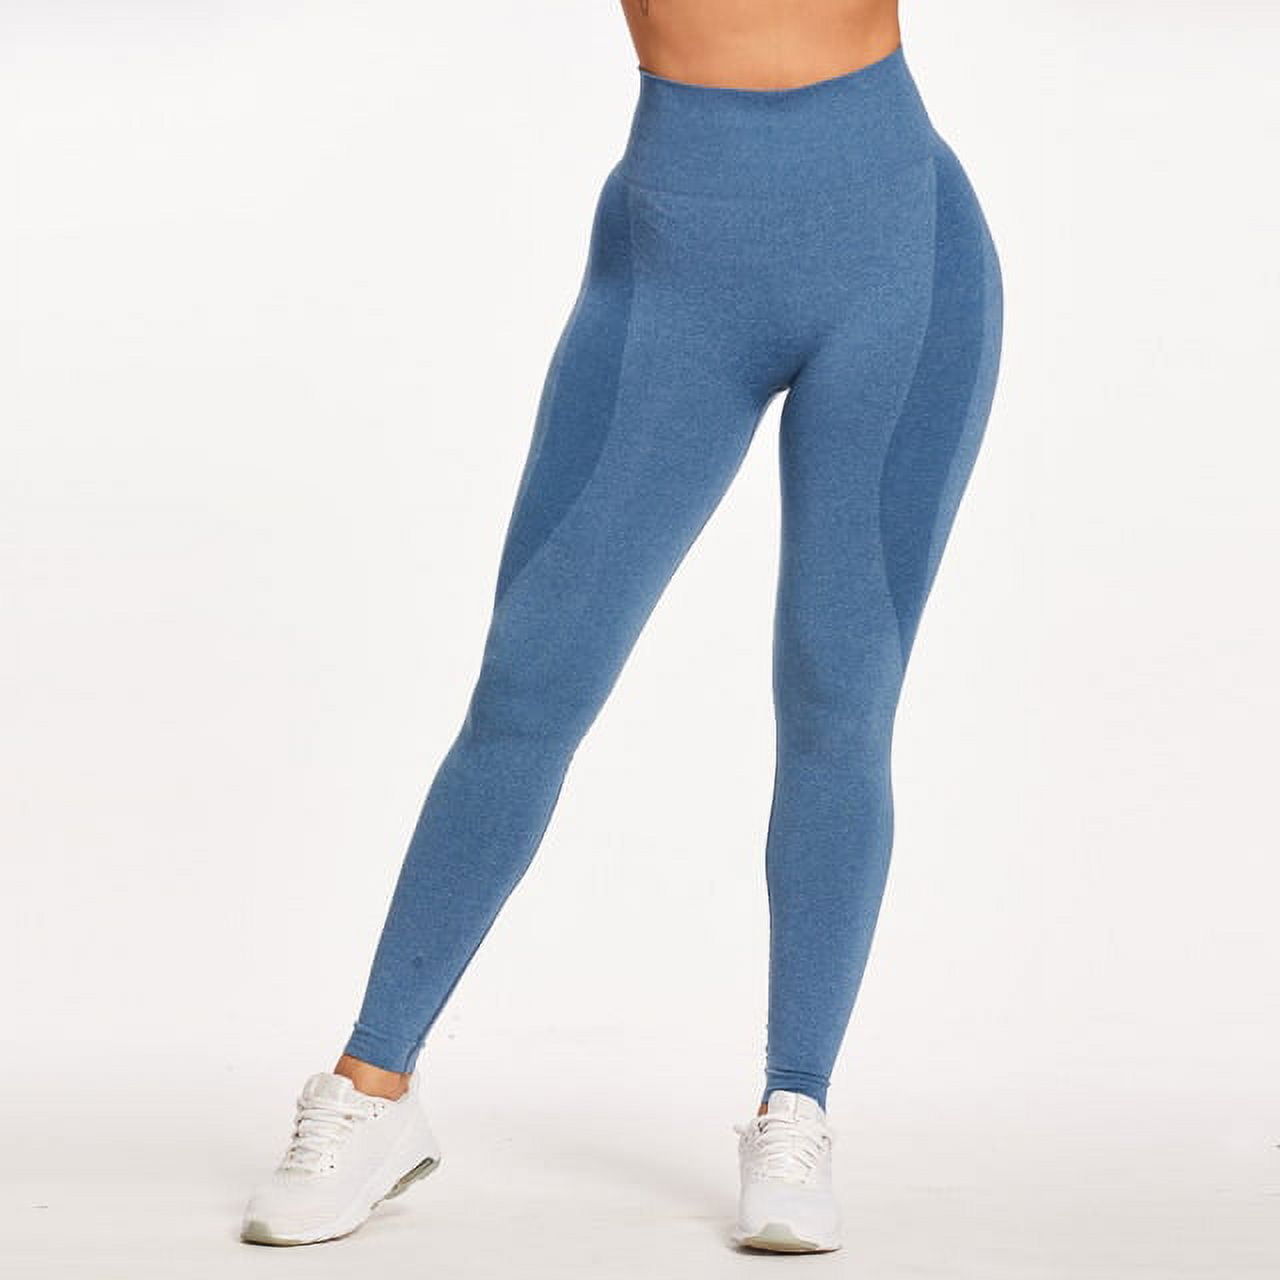 Waist Seamless Leggings Push Up Leggins Sport Women Fitness Running Yoga  Pants Energy Elastic Trousers Gym Girl Tights 